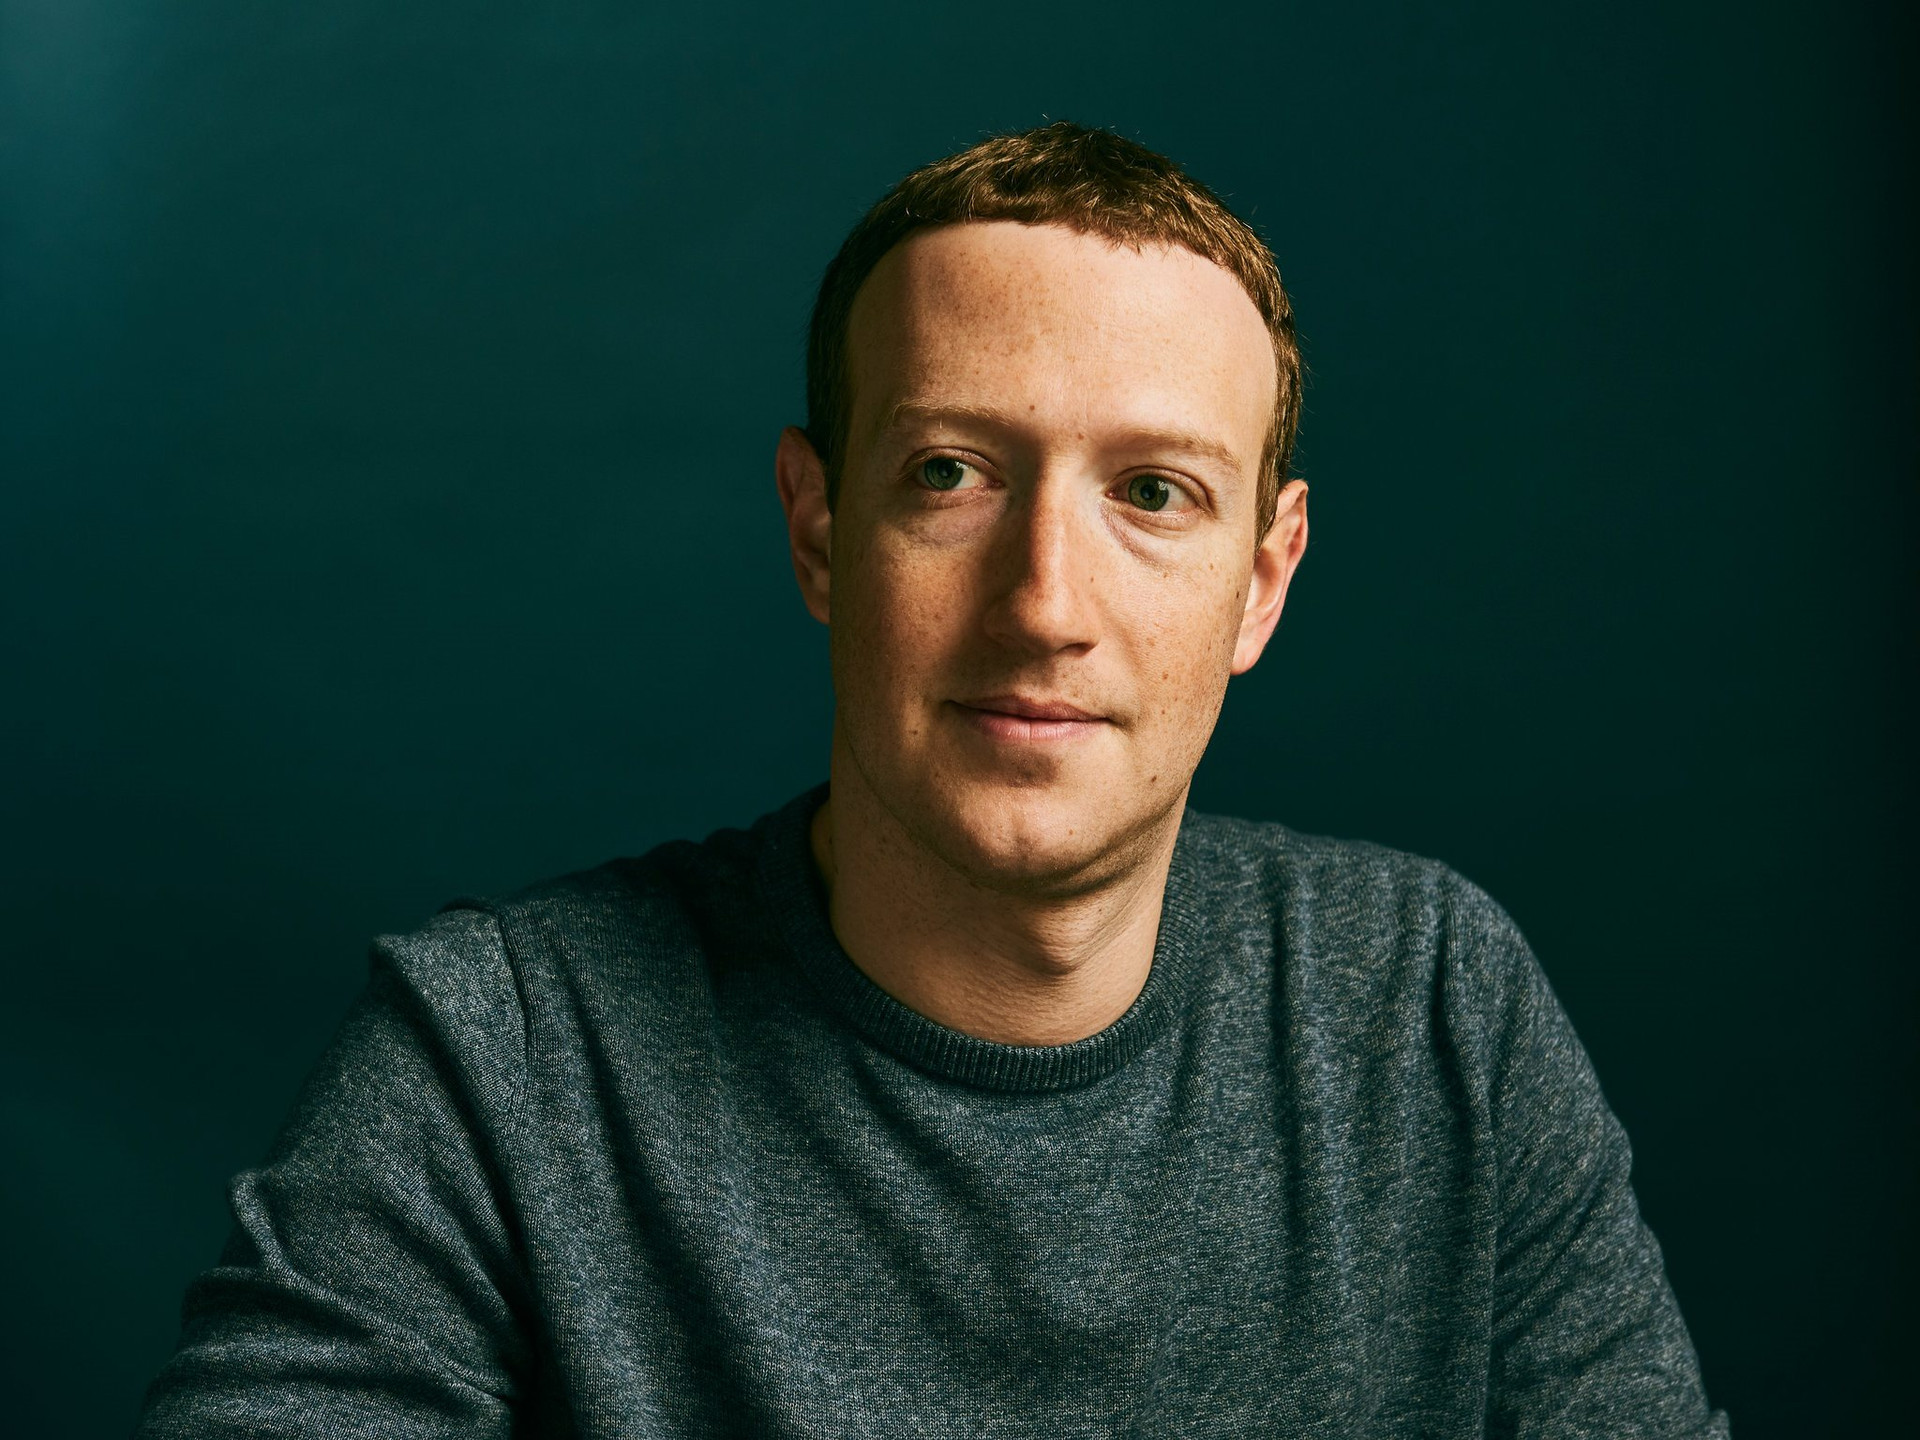 Nội bộ đạt đến đỉnh điểm của sự thất vọng, Mark Zuckerberg đi ‘quân cờ cuối’, tái khởi động ‘cỗ máy’ kiếm tiền bị bỏ quên - Ảnh 1.